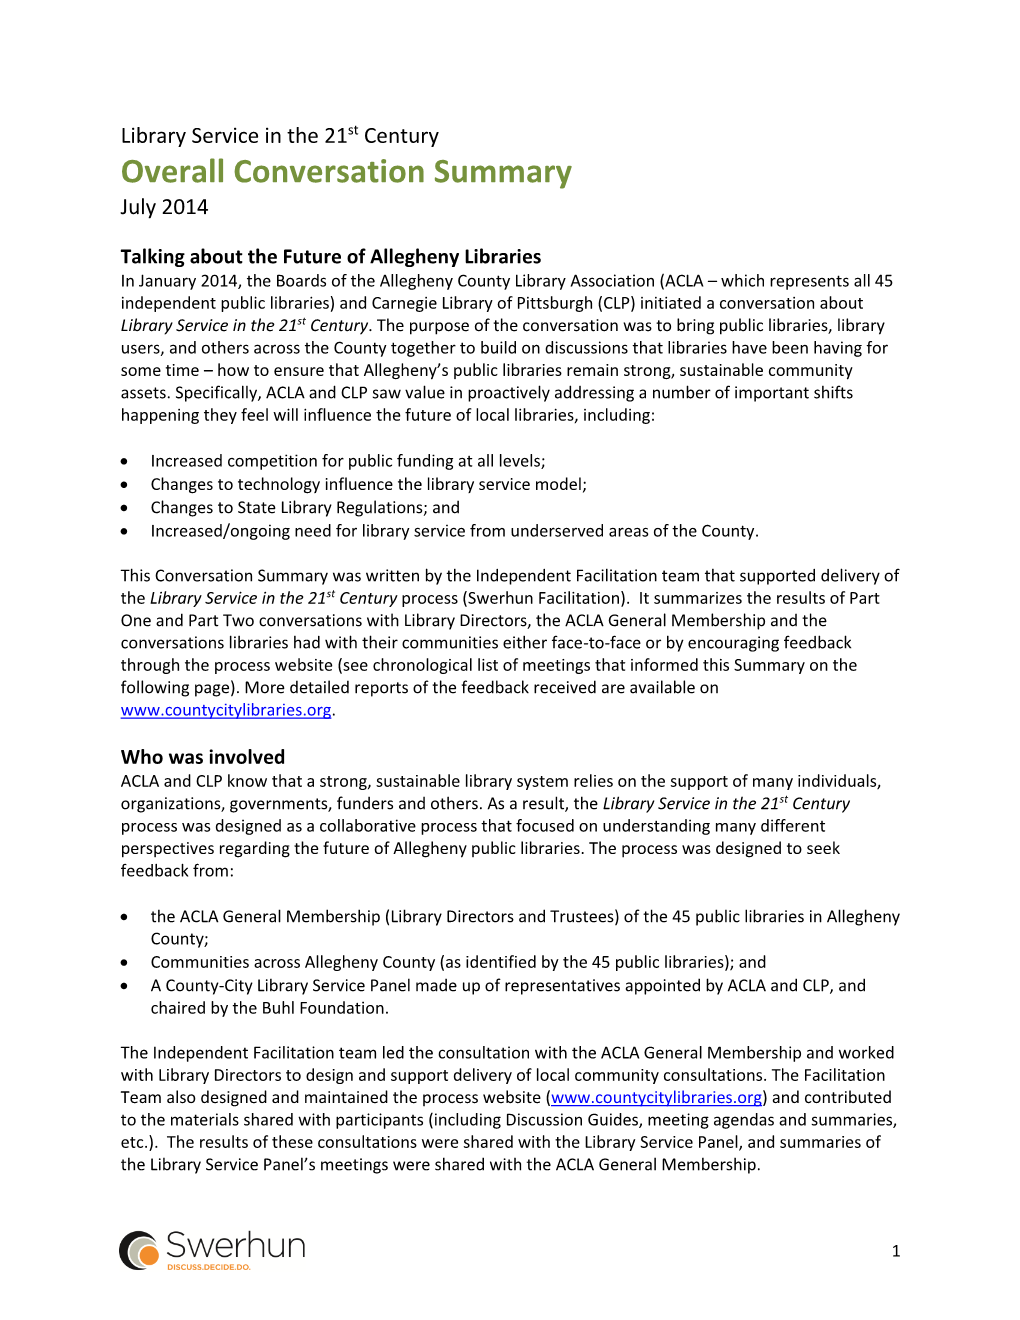 Overall Conversation Summary July 2014